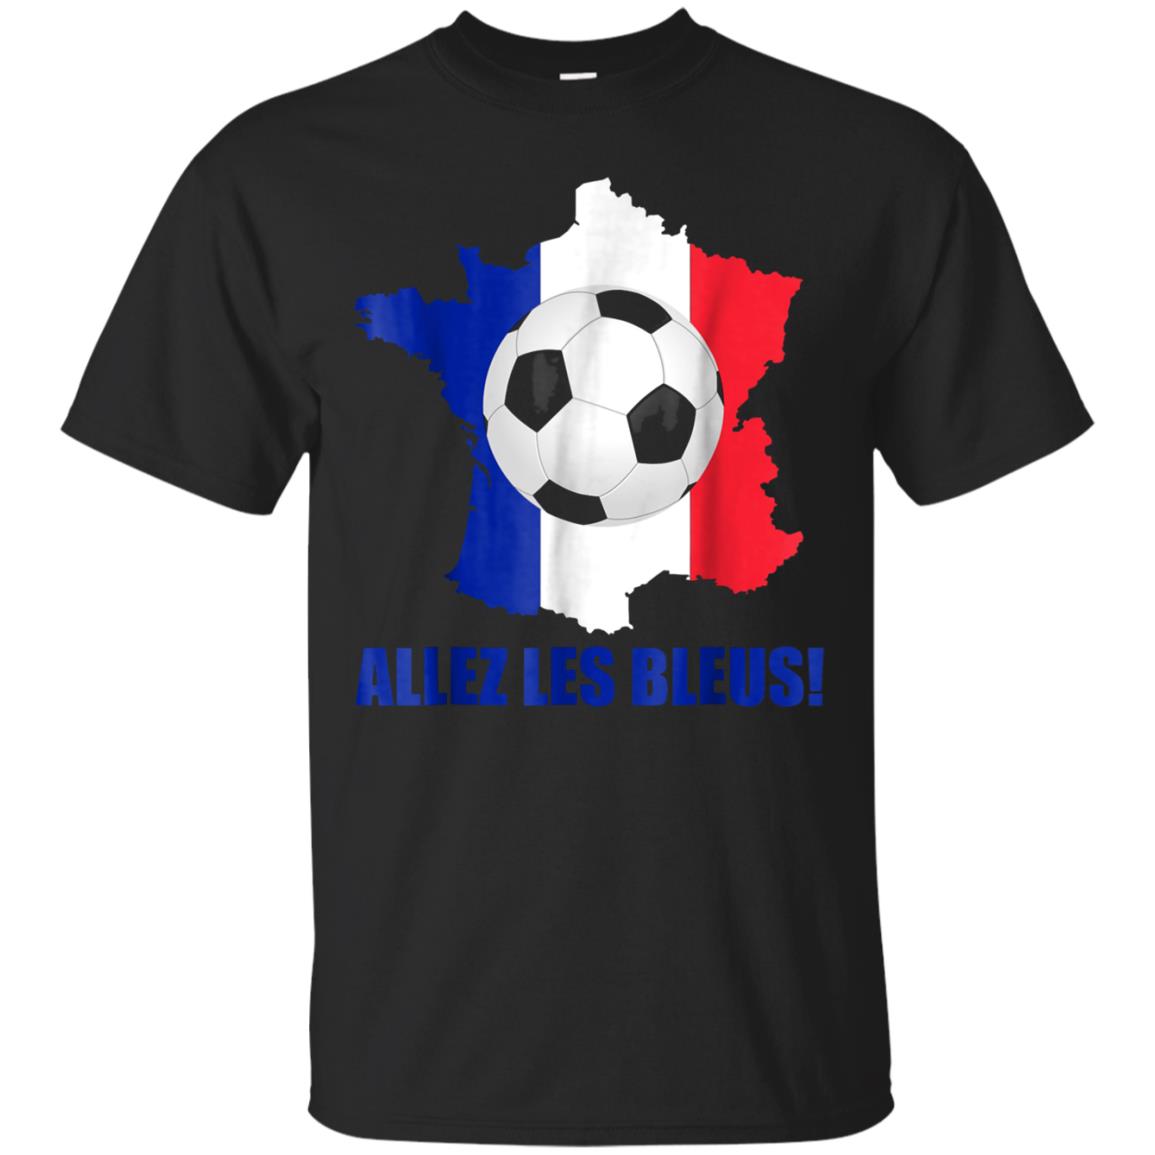 Storecastle: Allez Les Bleus France Soccer T-shirt